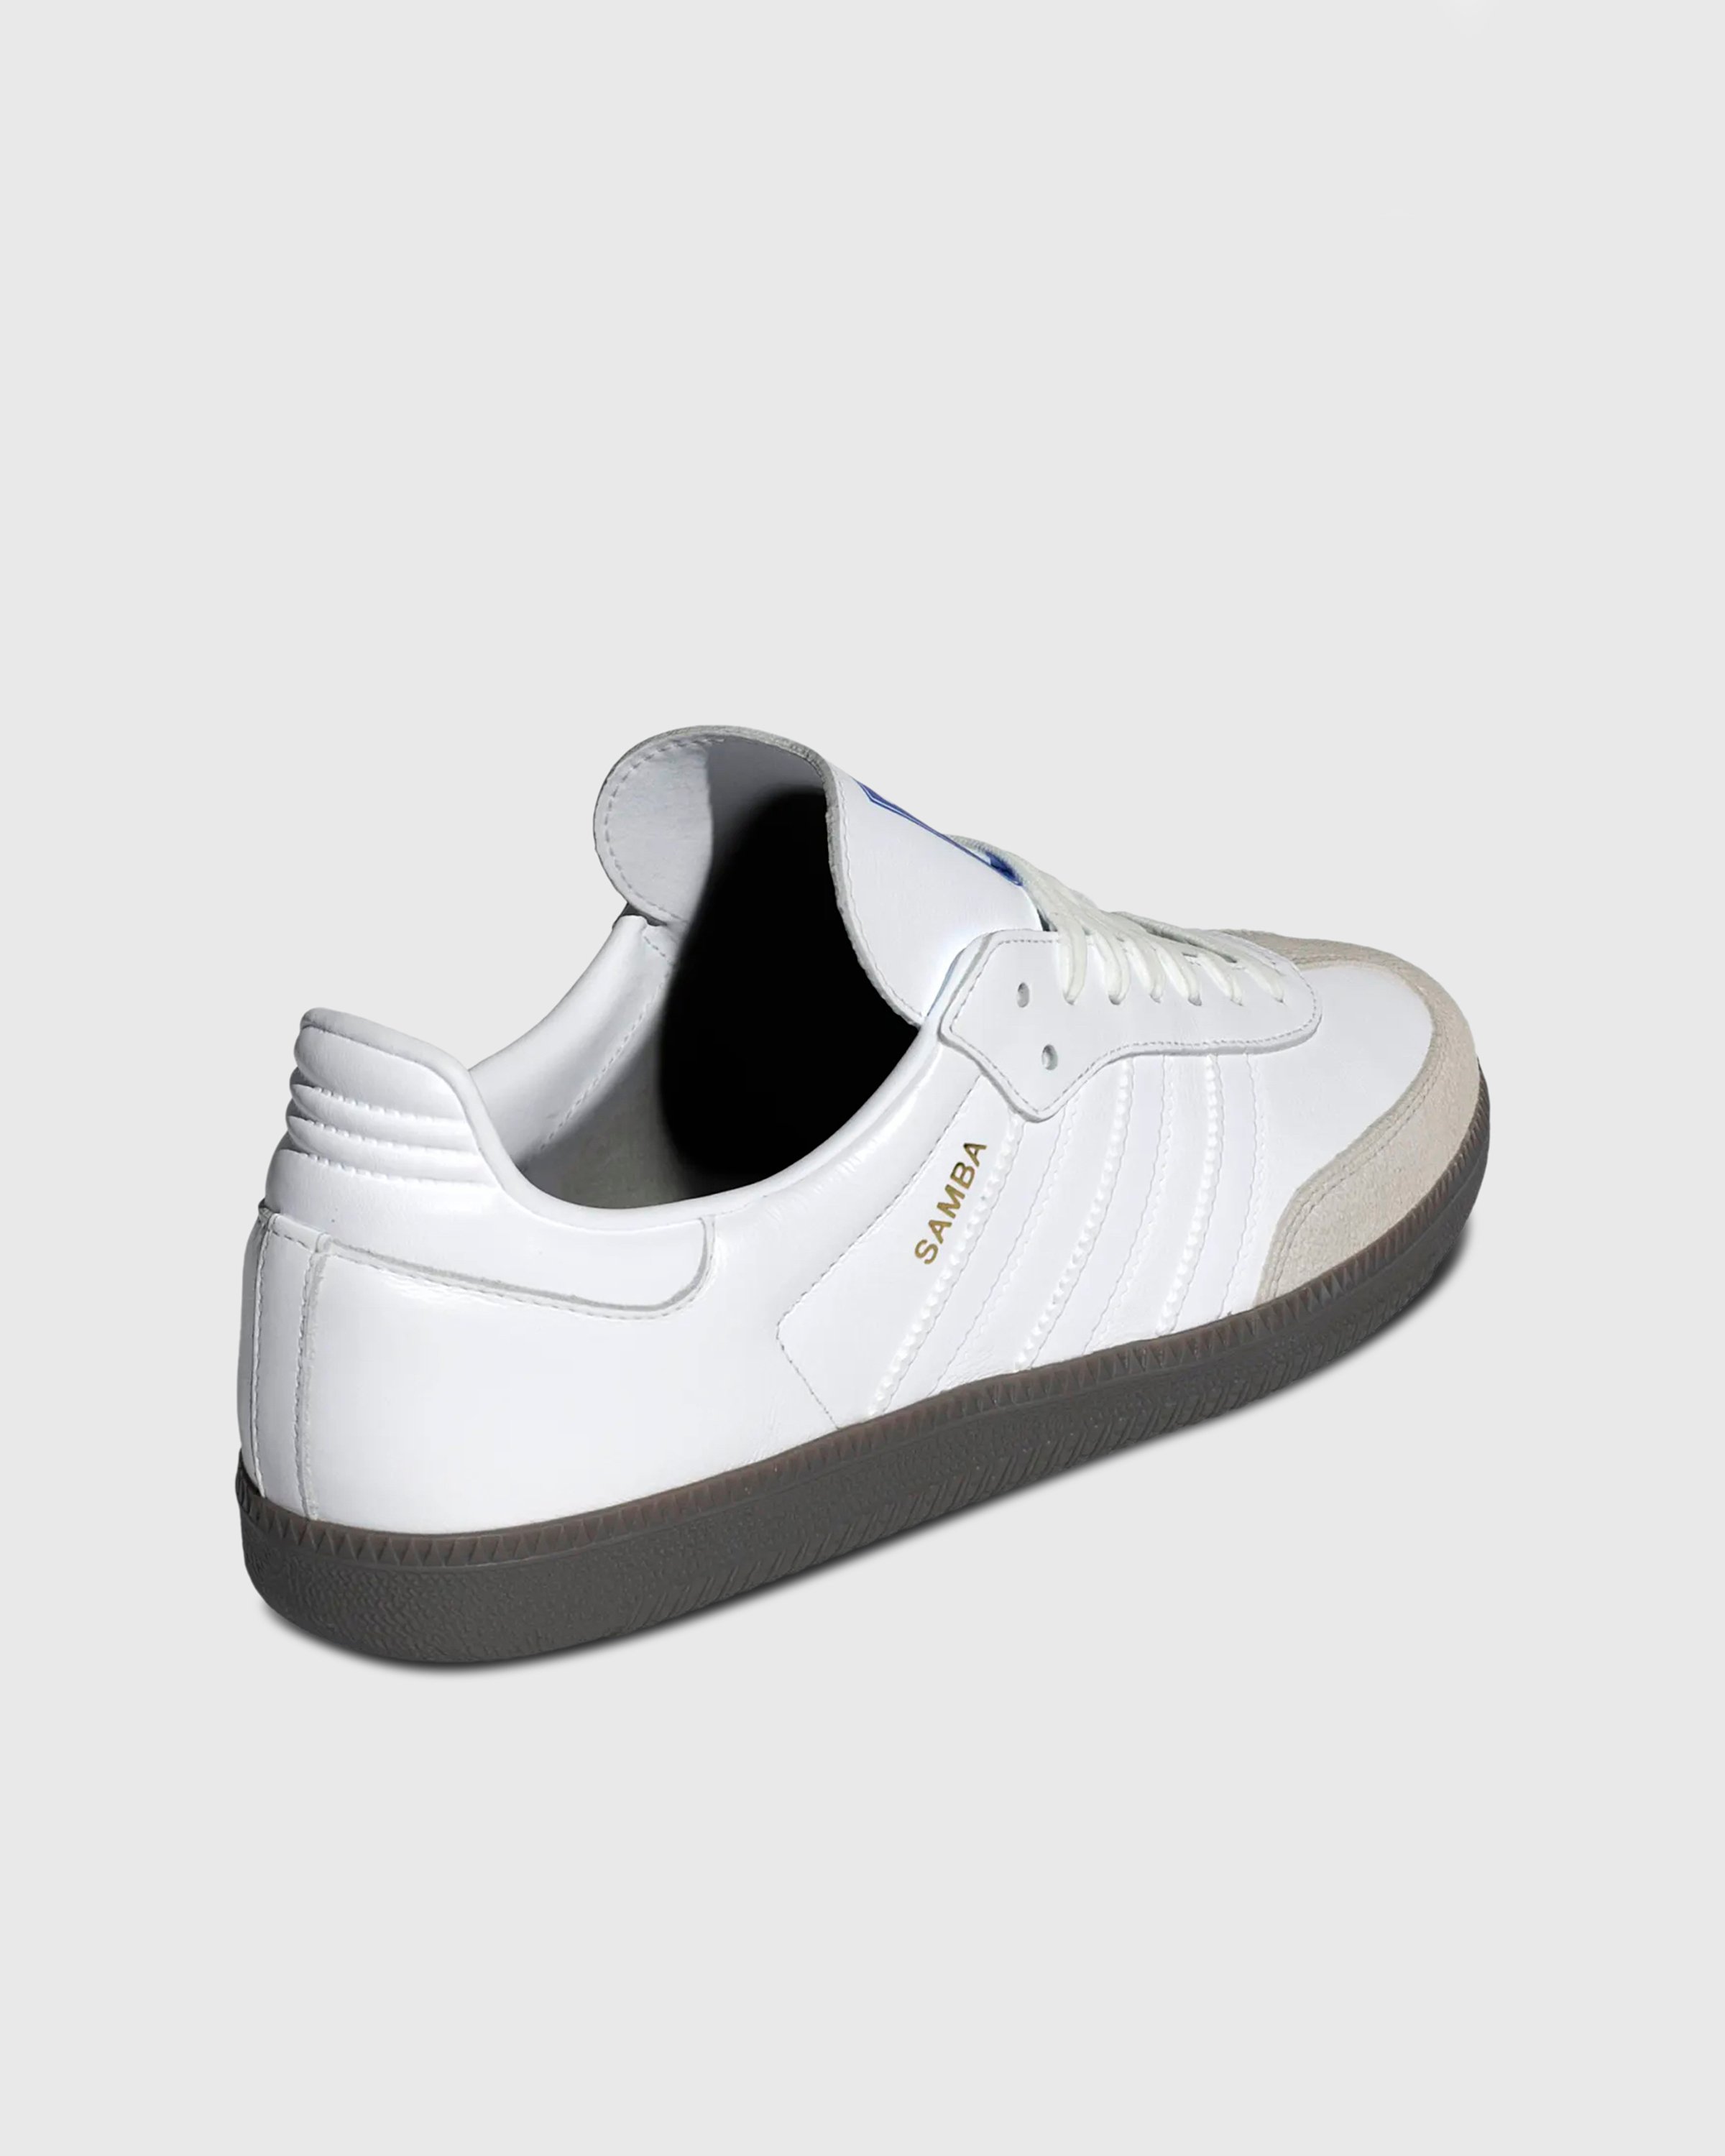 Adidas - SAMBA OG            FTWWHT/FTWWHT/GUM5 - Footwear - White - Image 4